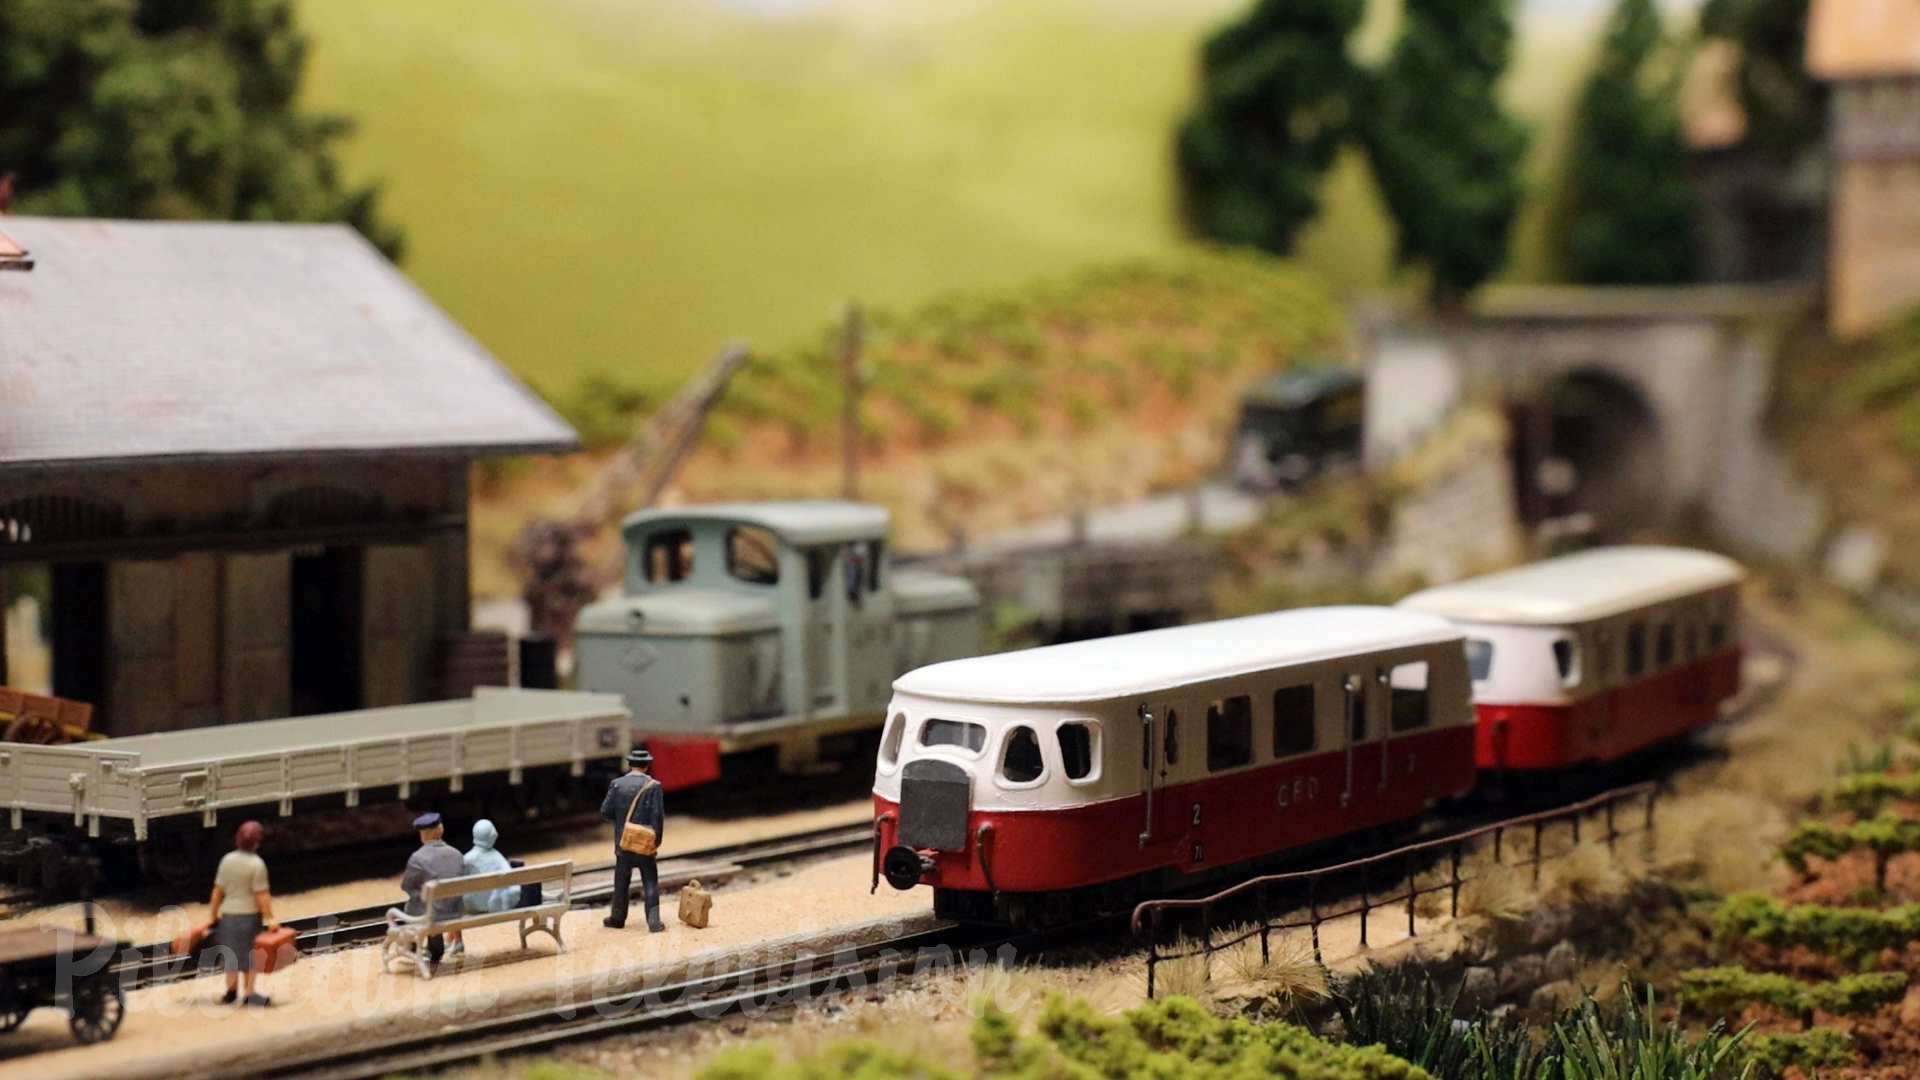 Beautiful French Model Railway Diorama in Narrow Gauge Sainte Ellisaire by Jaco Vroom